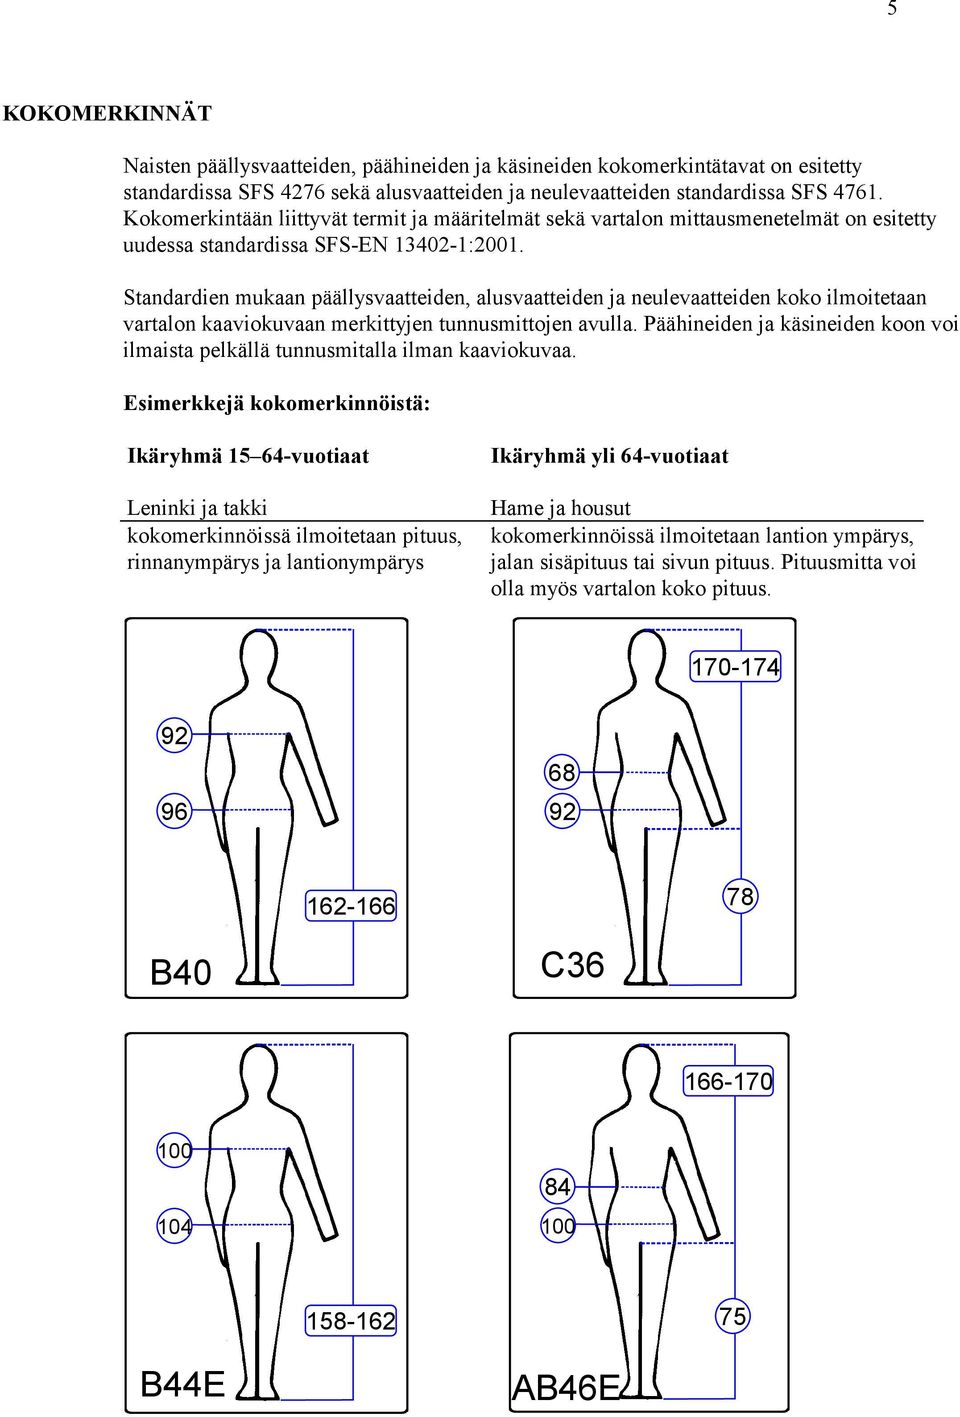 Standardien mukaan päällysvaatteiden, alusvaatteiden ja neulevaatteiden koko ilmoitetaan vartalon kaaviokuvaan merkittyjen tunnusmittojen avulla.